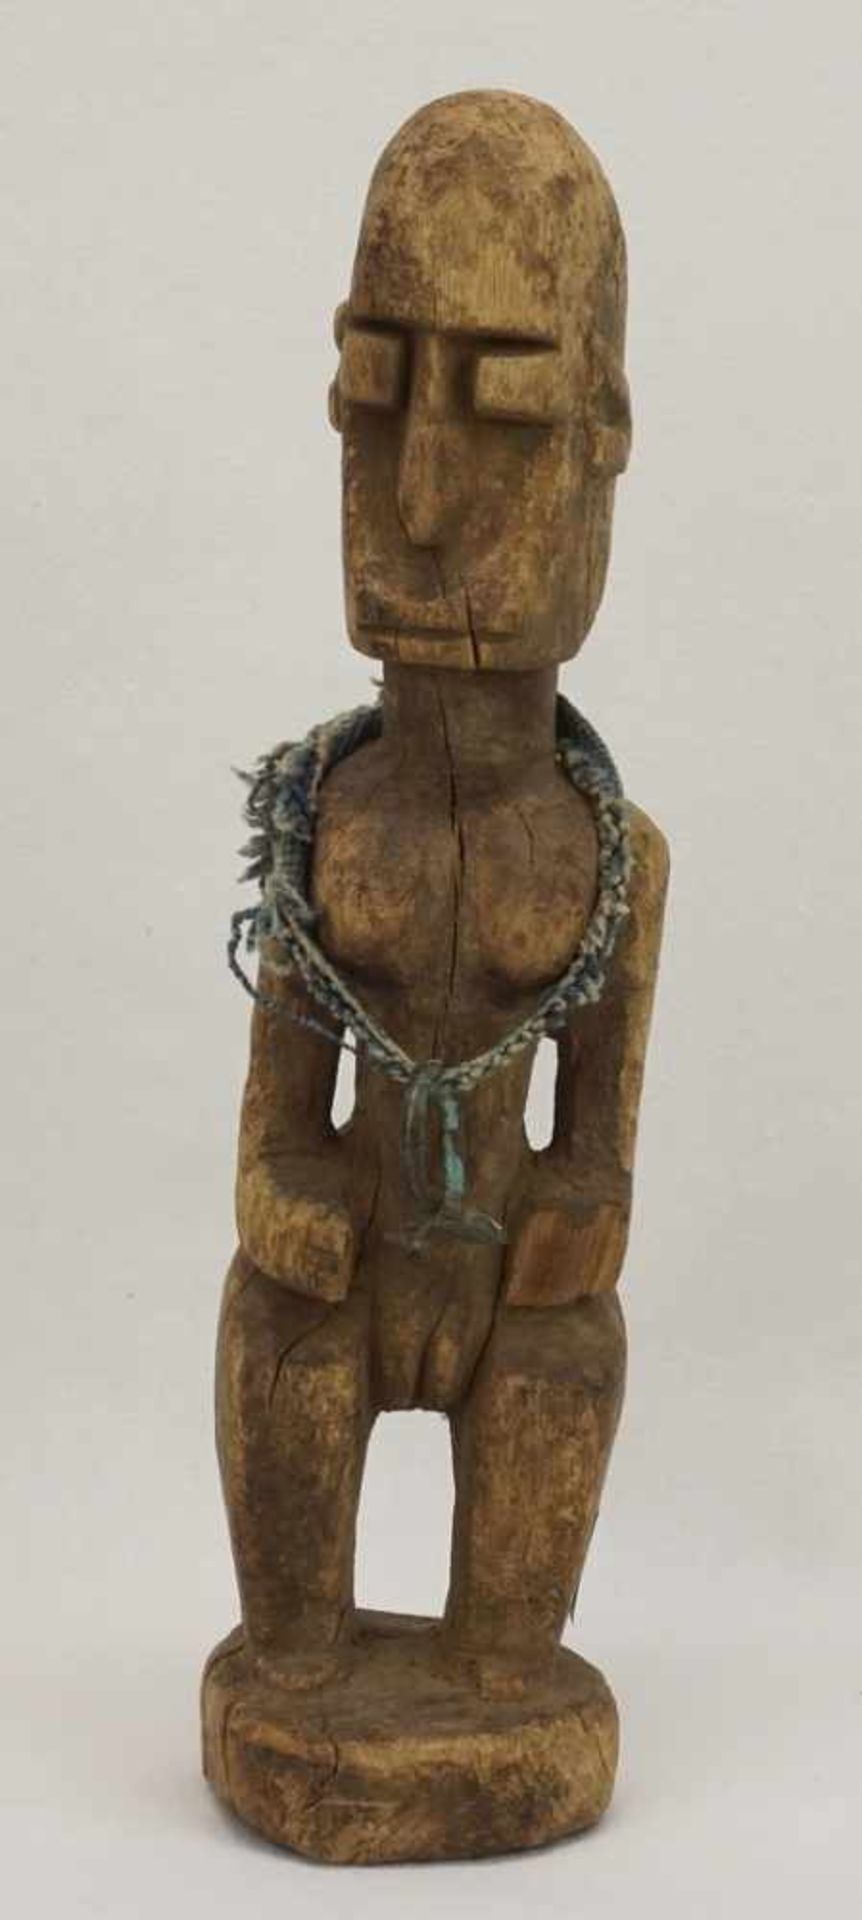 Stehende weibliche Figur der Dogon, Mali, um 1920Hartholz, schöne Alterspatina, an Stoff hängender